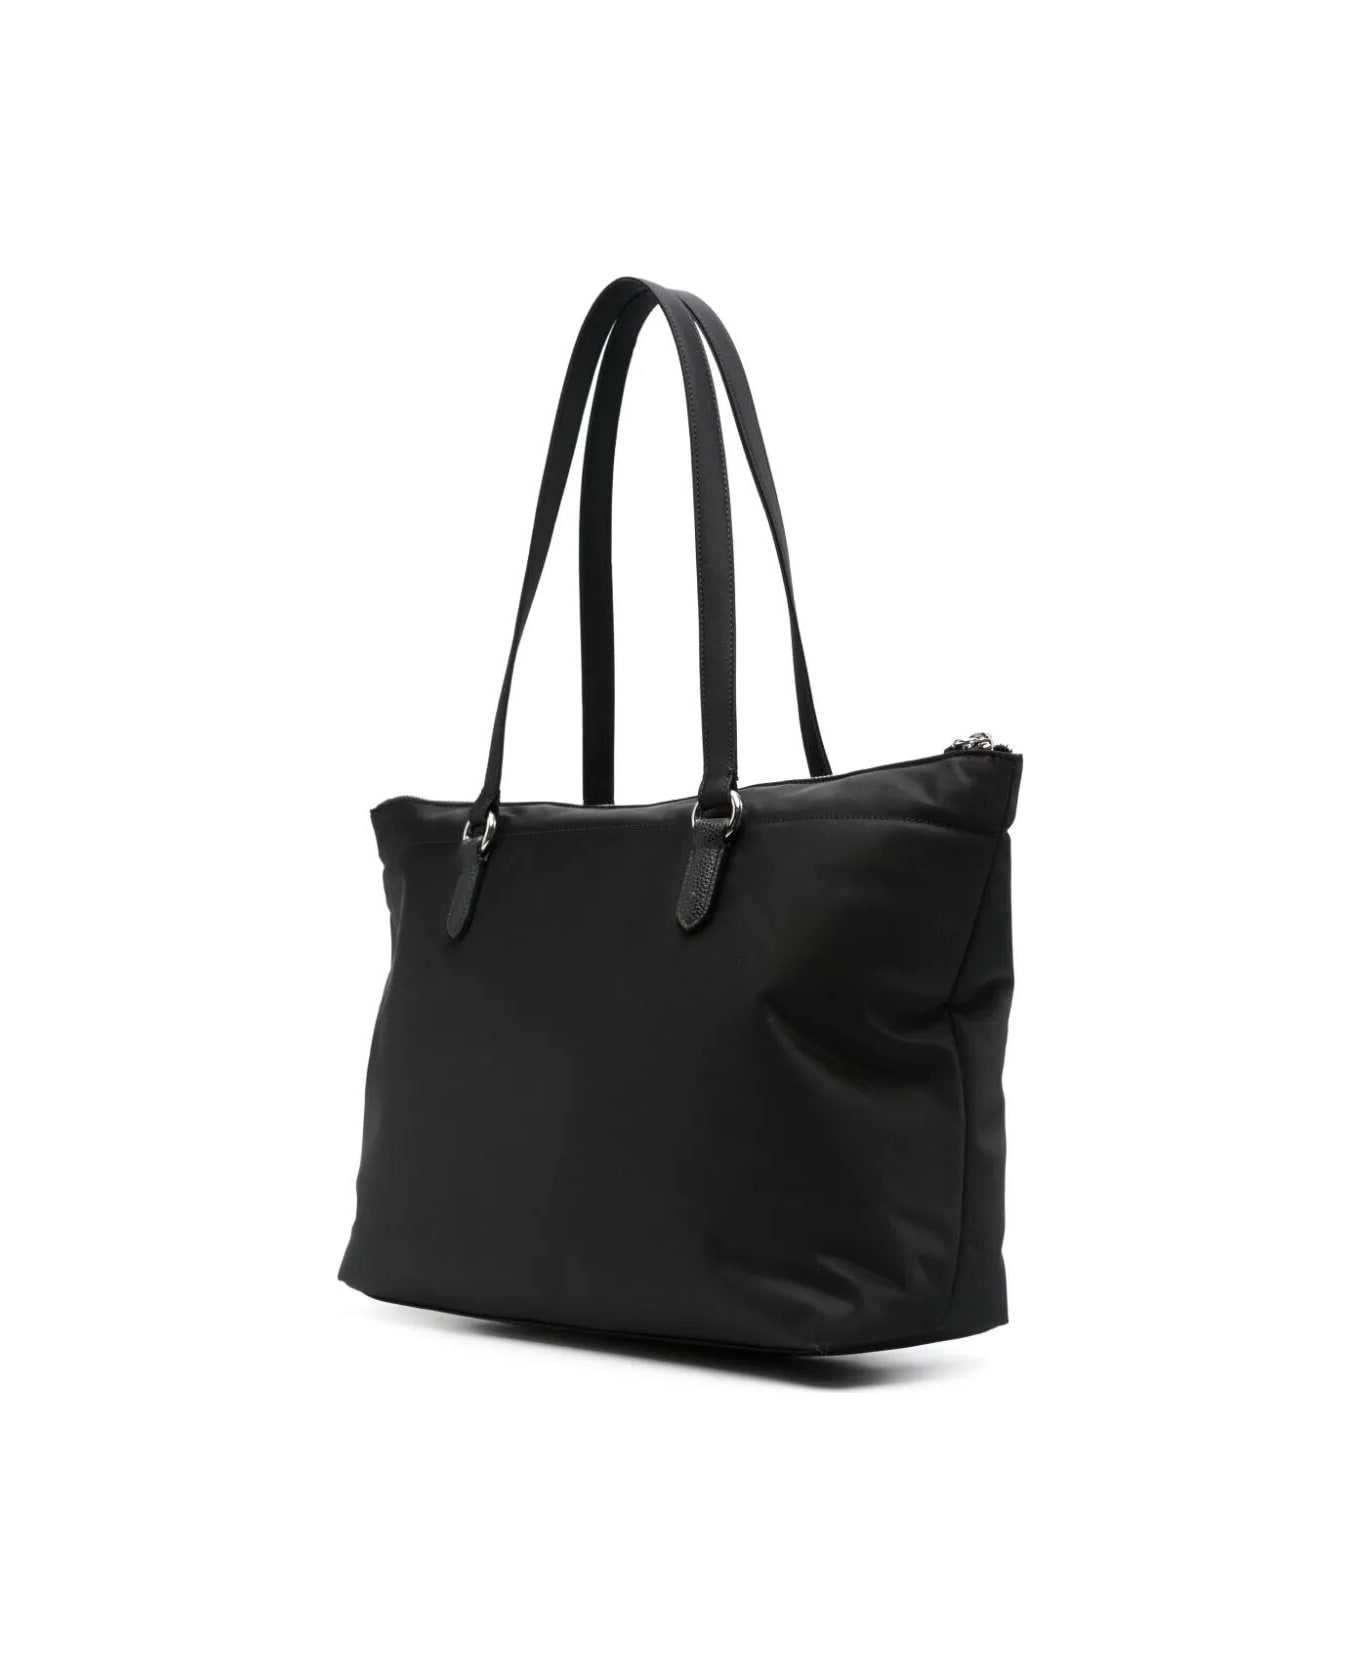 Emporio Armani Shopping Bag - Black トートバッグ